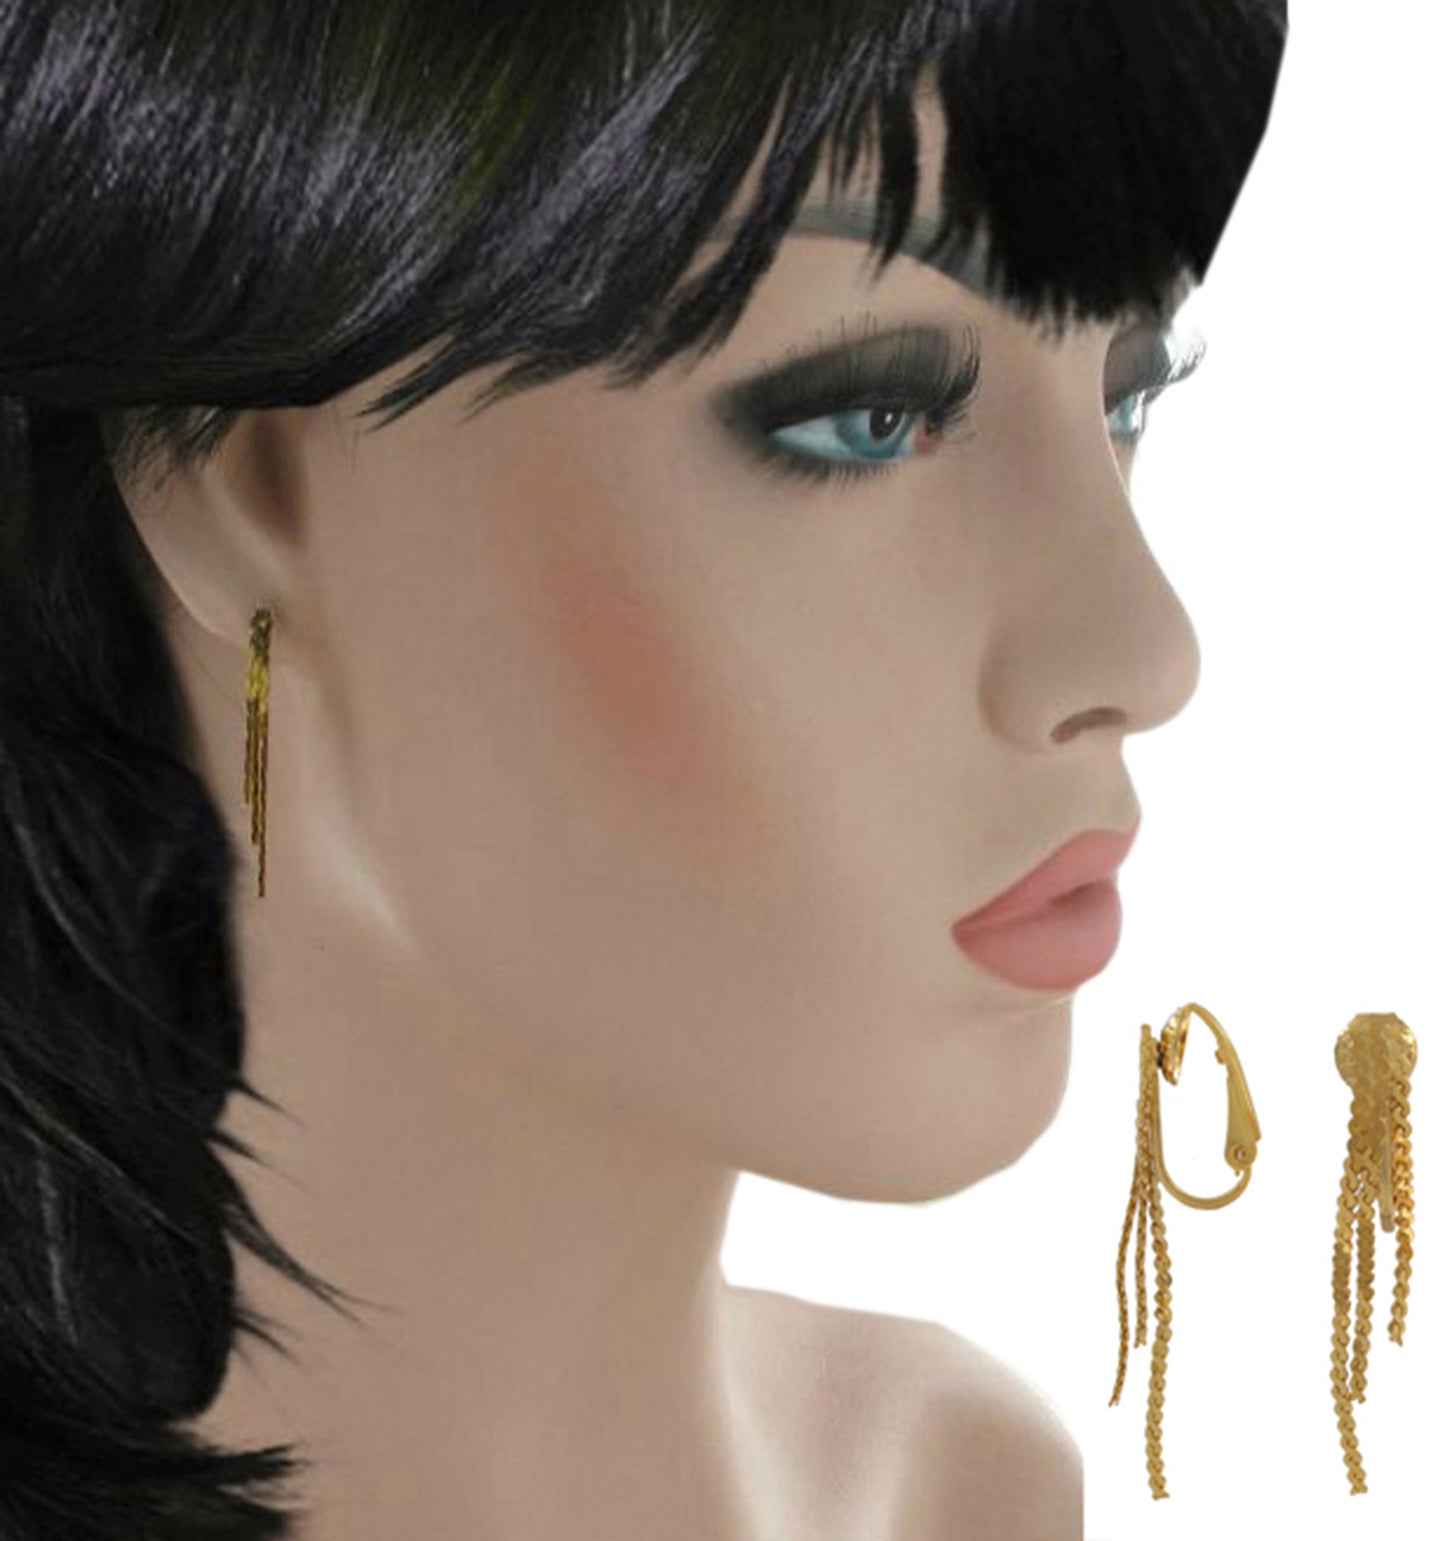 Gold Tone Chain Tassel Dangle Clip On Earrings 1 3/8"